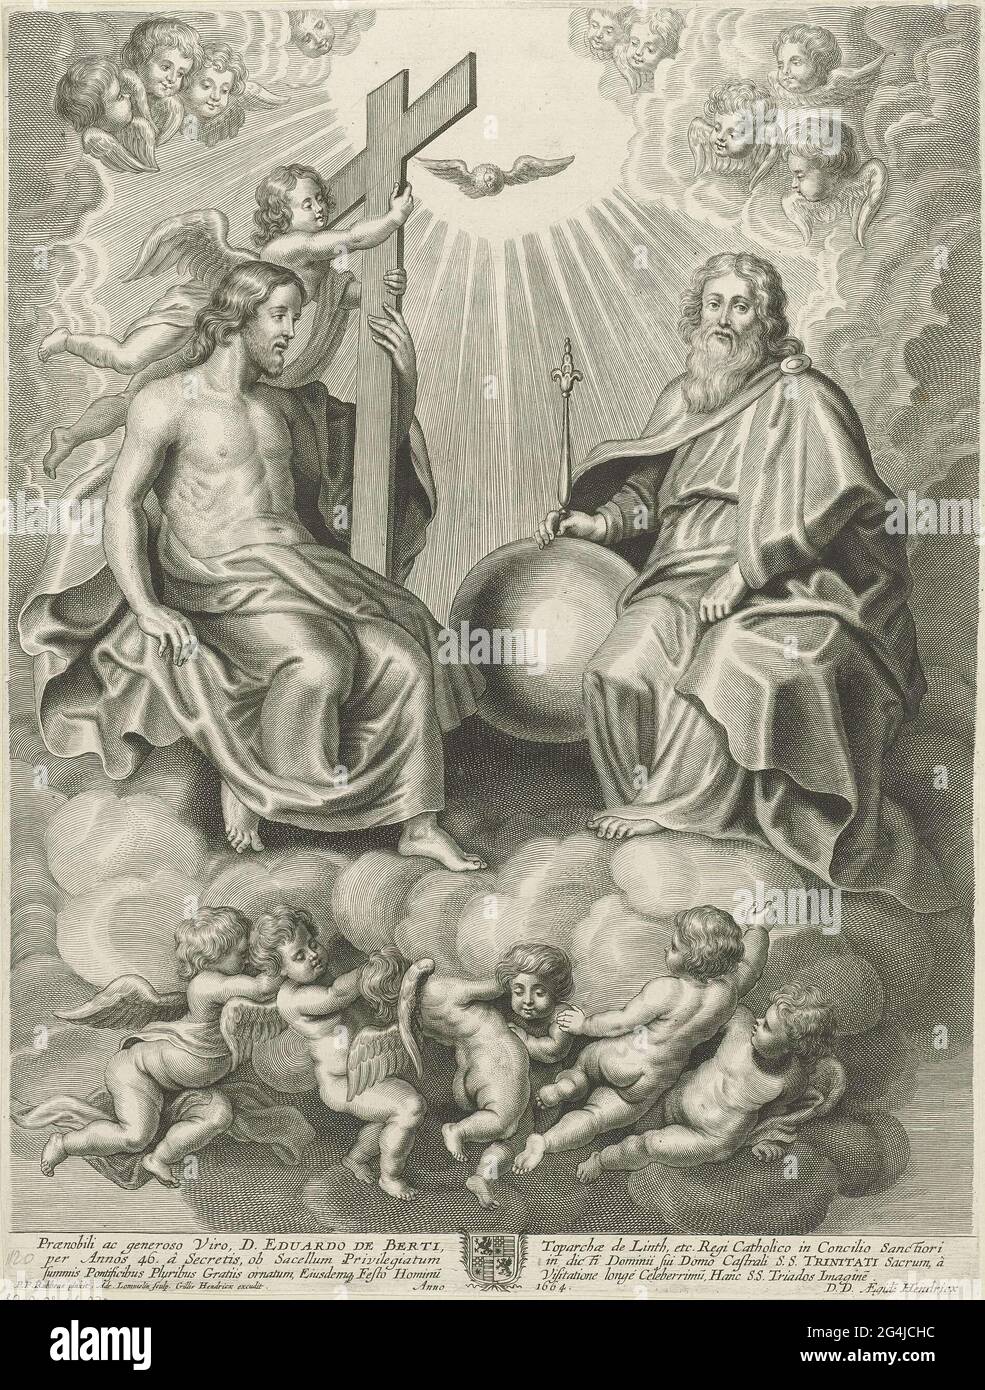 La sainte trois-unité sur les nuages, tenue par un groupe d'anges. A  droite, Dieu est comme un vieil homme avec le globe et le scepter, à  gauche, Christ avec la croix.